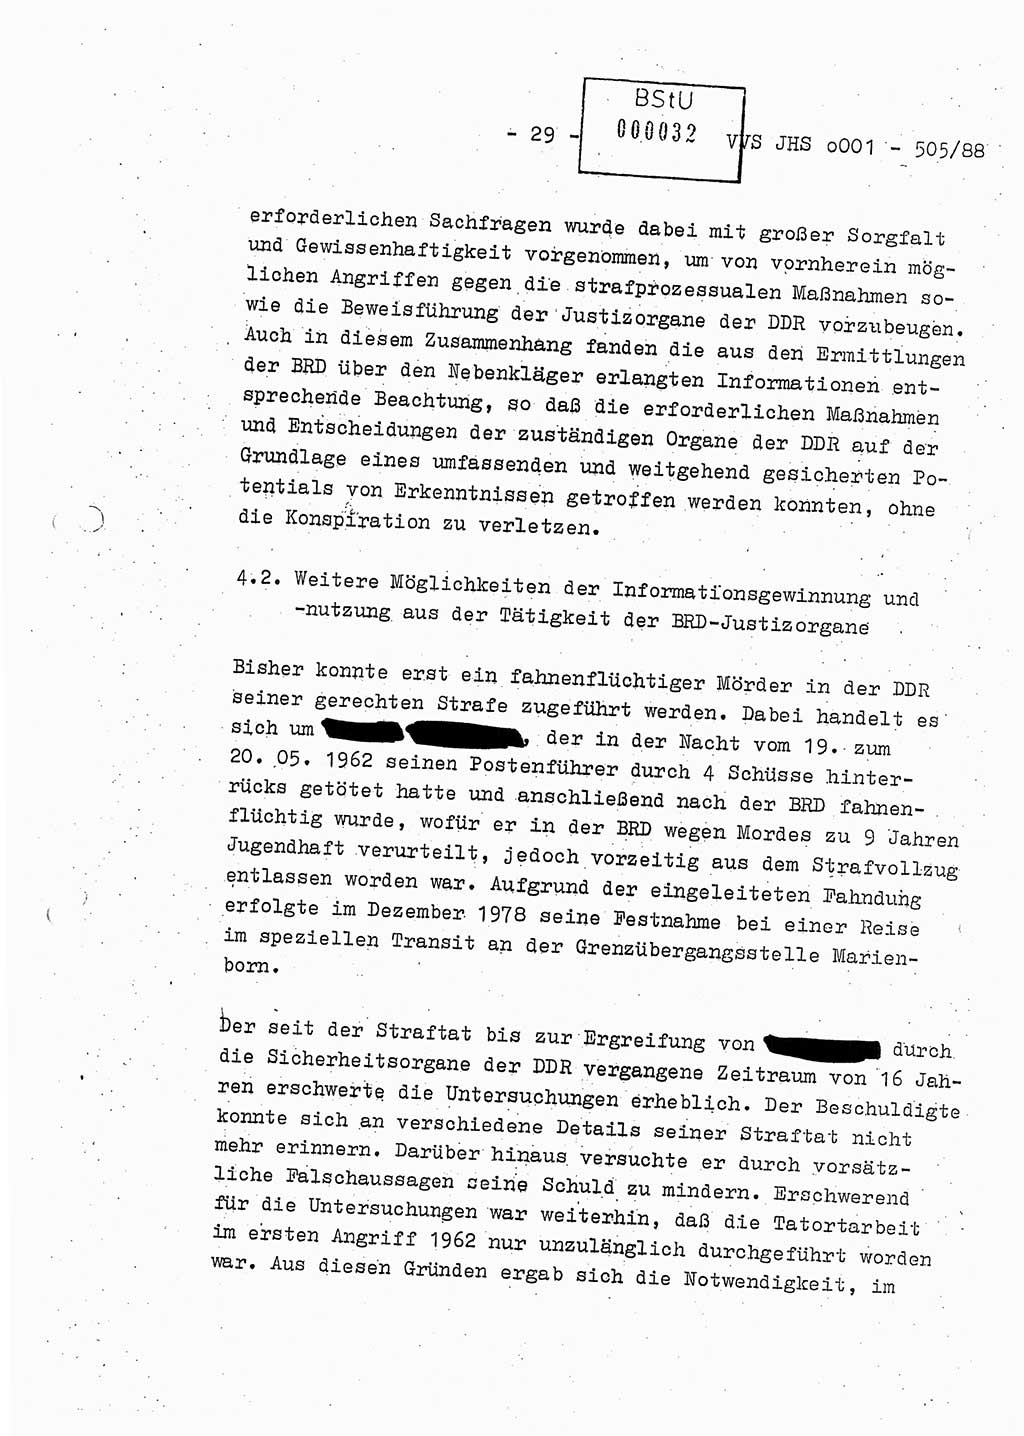 Diplomarbeit Leutnant Frank Schulze (HA Ⅸ/9), Ministerium für Staatssicherheit (MfS) [Deutsche Demokratische Republik (DDR)], Juristische Hochschule (JHS), Vertrauliche Verschlußsache (VVS) o001-505/88, Potsdam 1988, Seite 29 (Dipl.-Arb. MfS DDR JHS VVS o001-505/88 1988, S. 29)